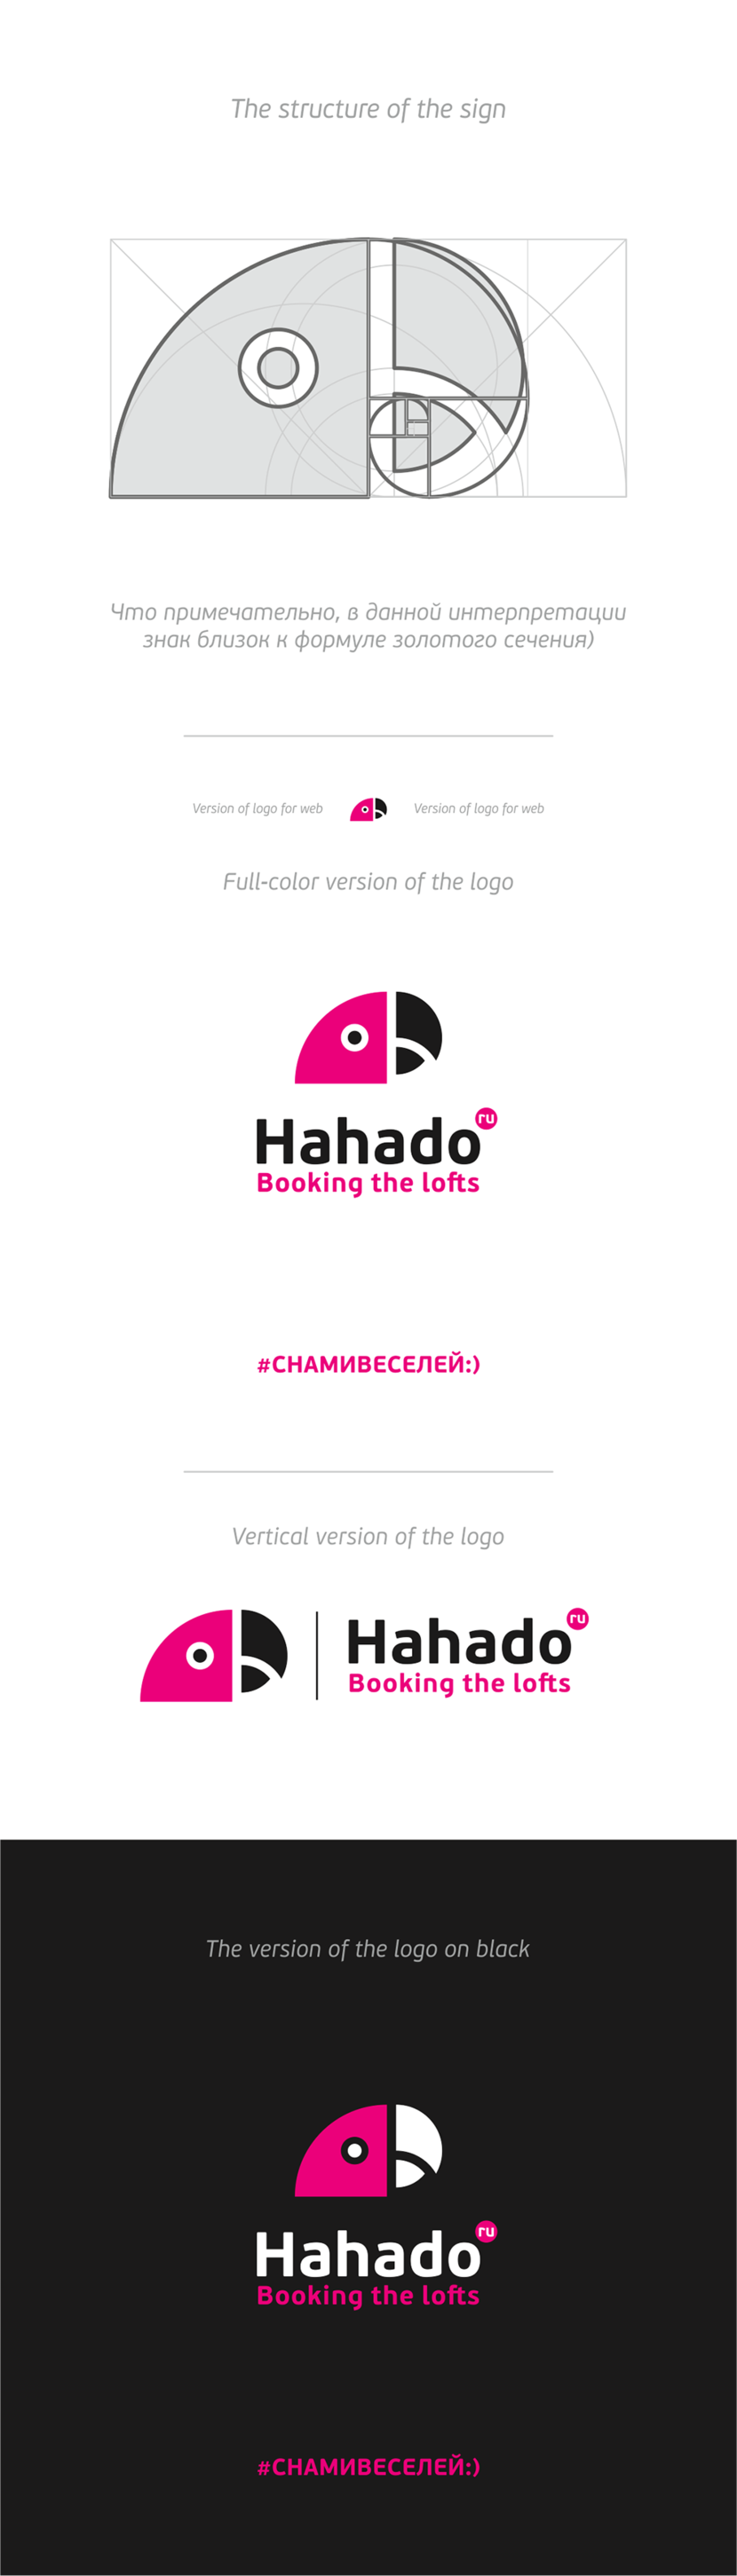 + - Лого для компании hahado.ru  (Хахаду) - сервис бронирования лофтов